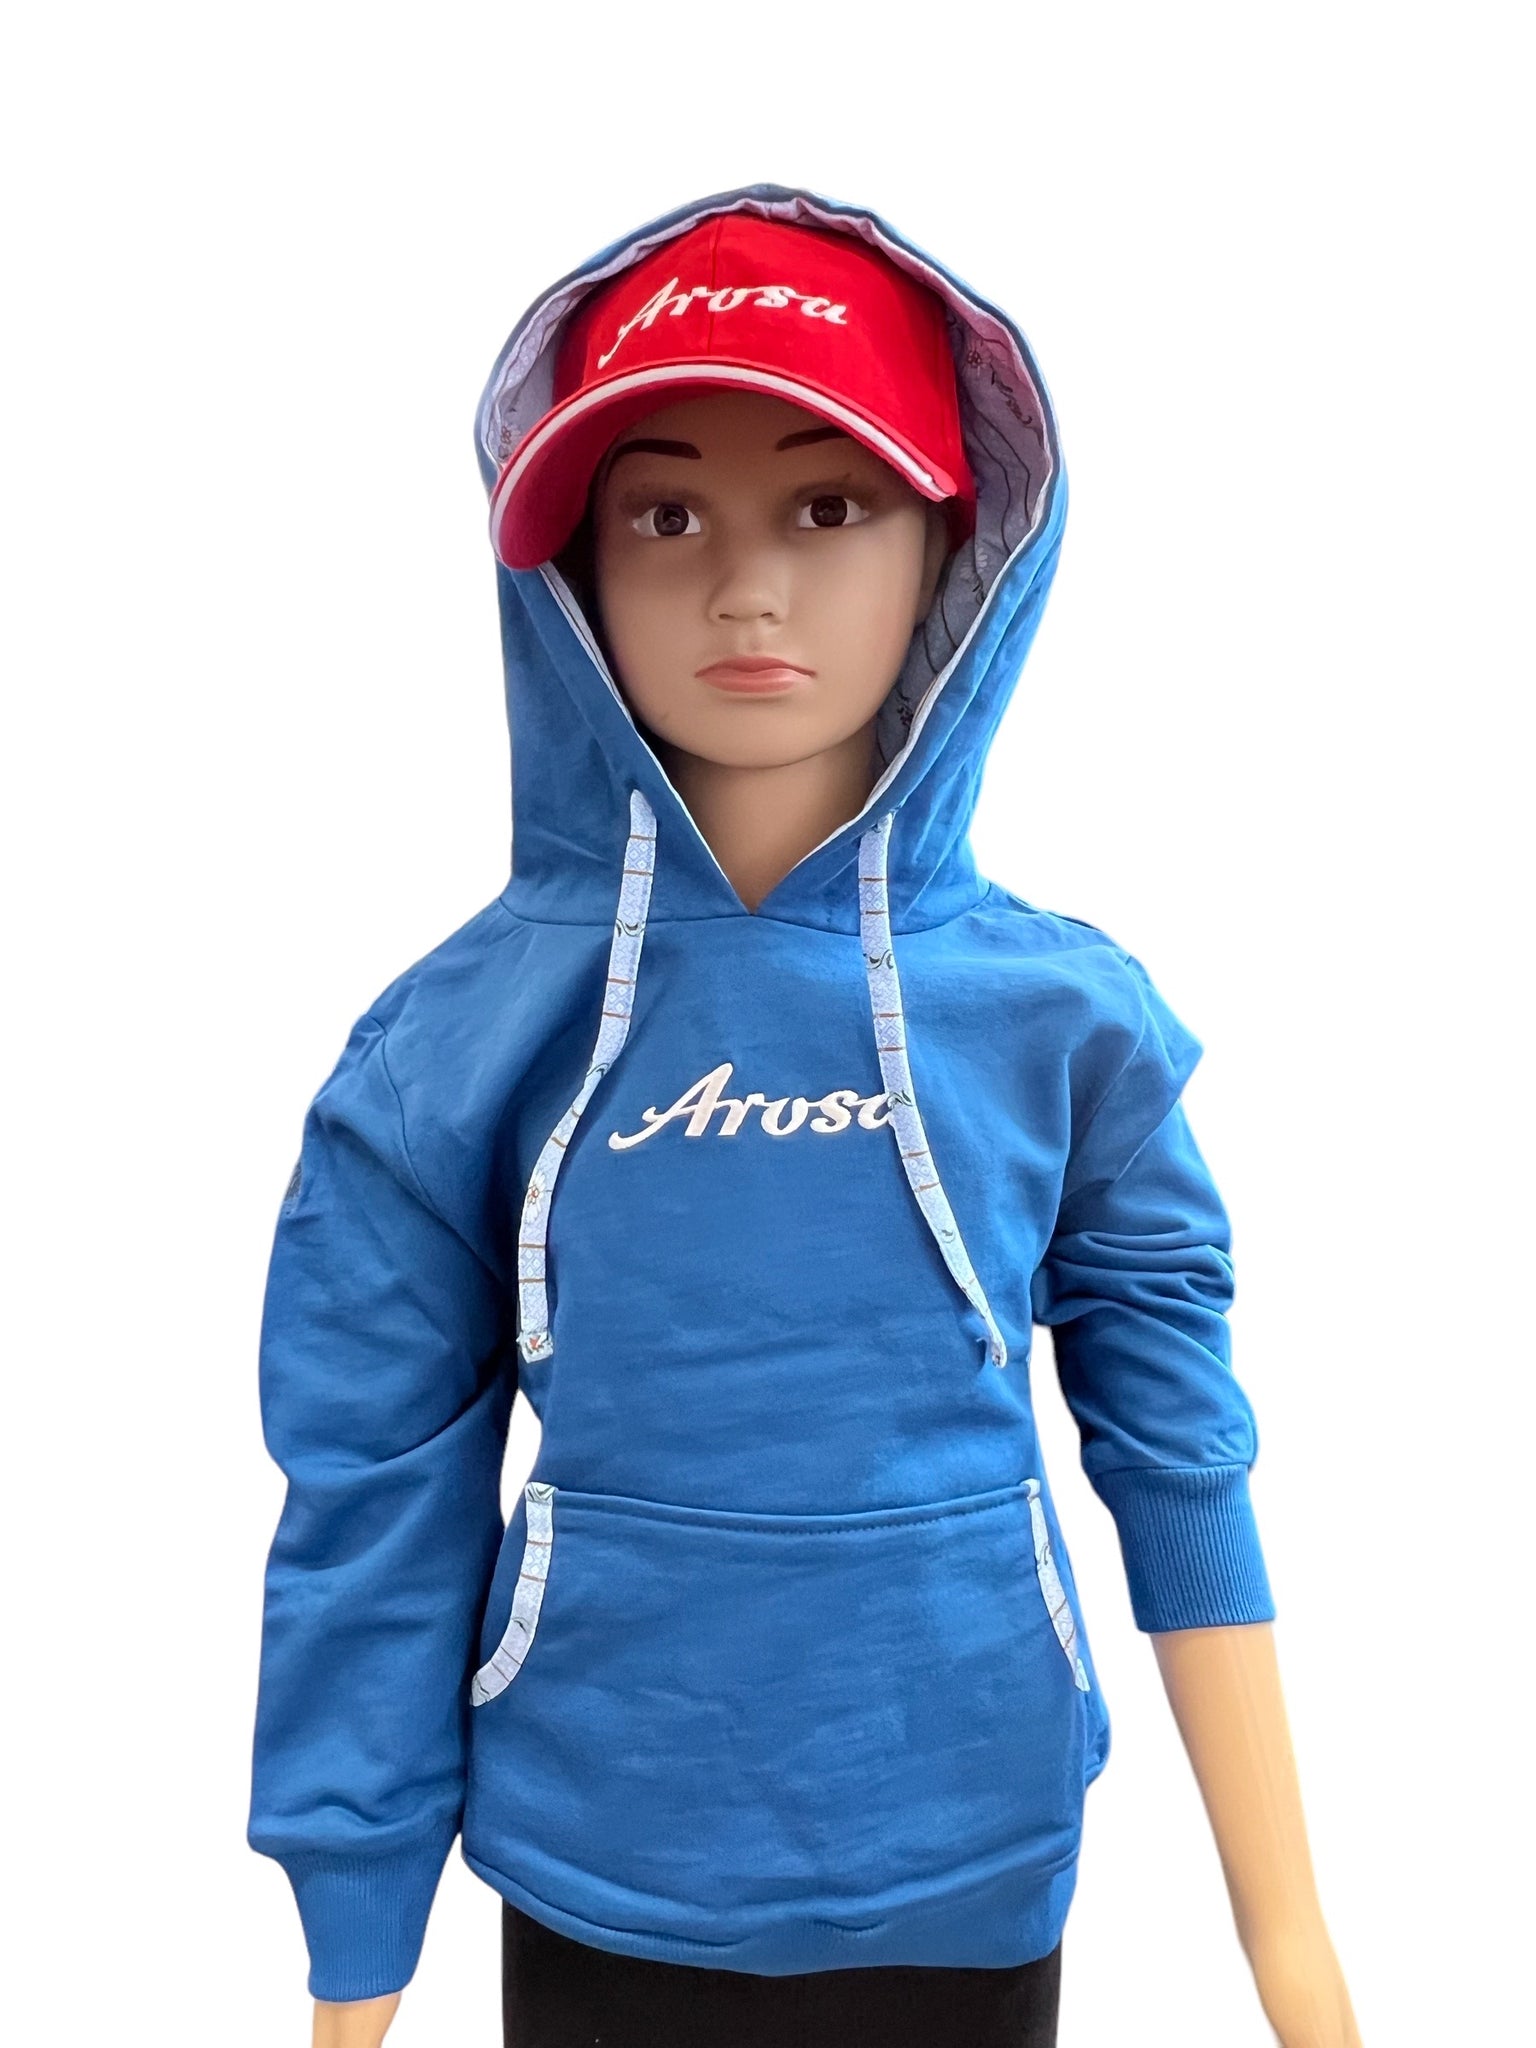 Arosa hoodie